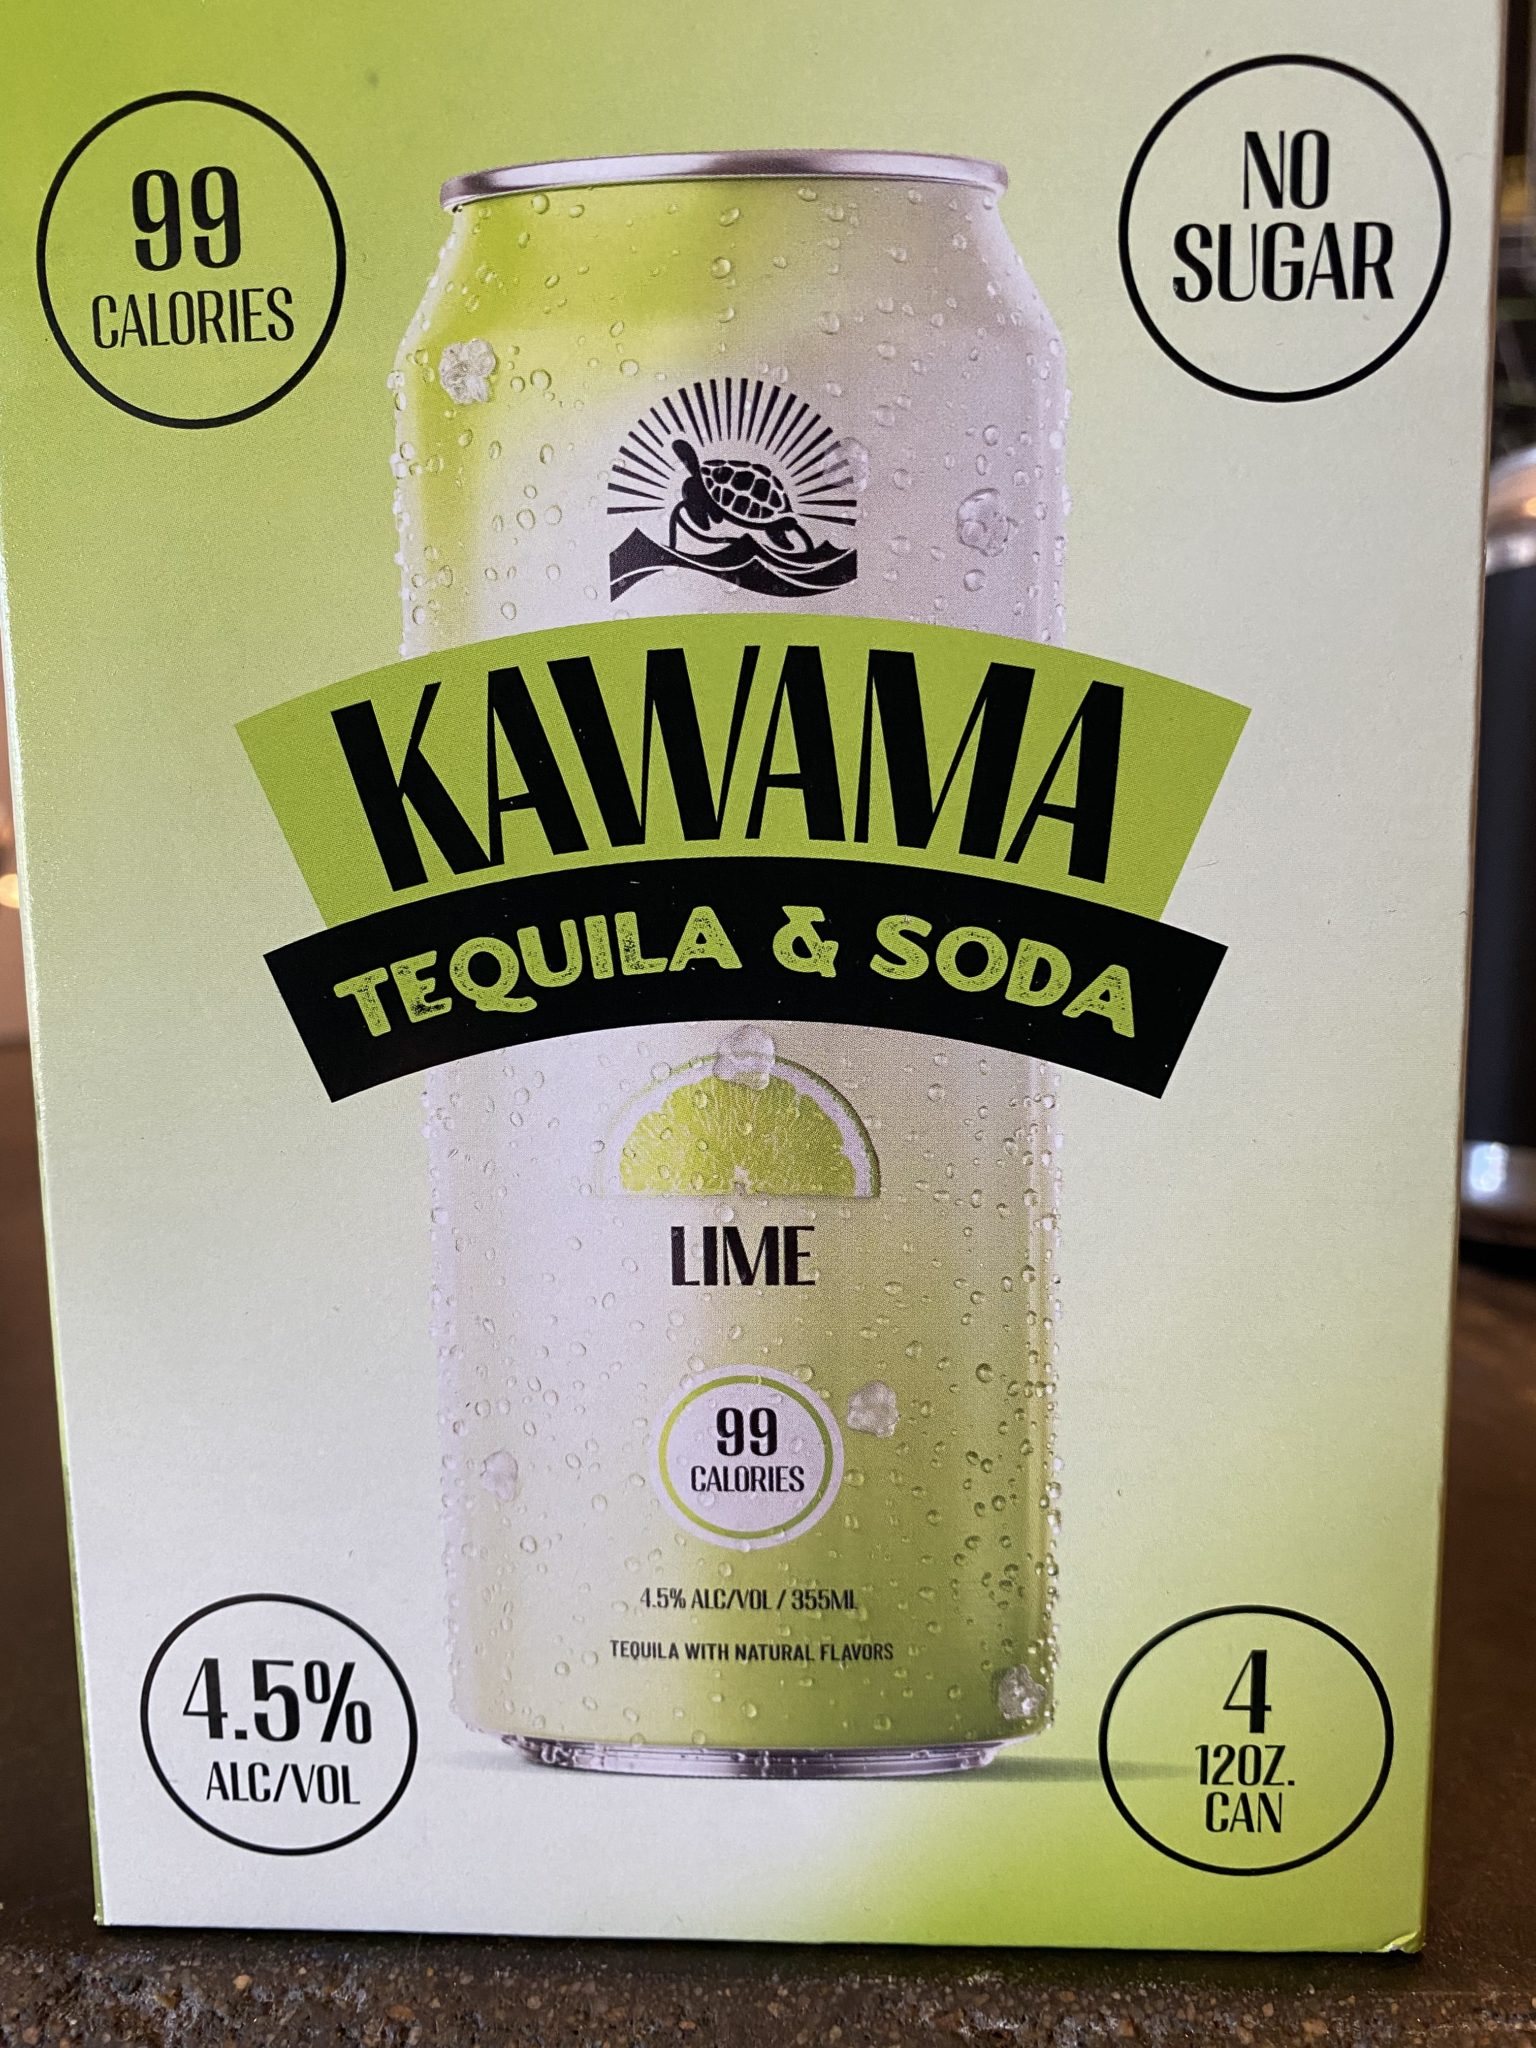 KAWAMA TEQUILA & SODA LIME - Perk's Beer & Beverage